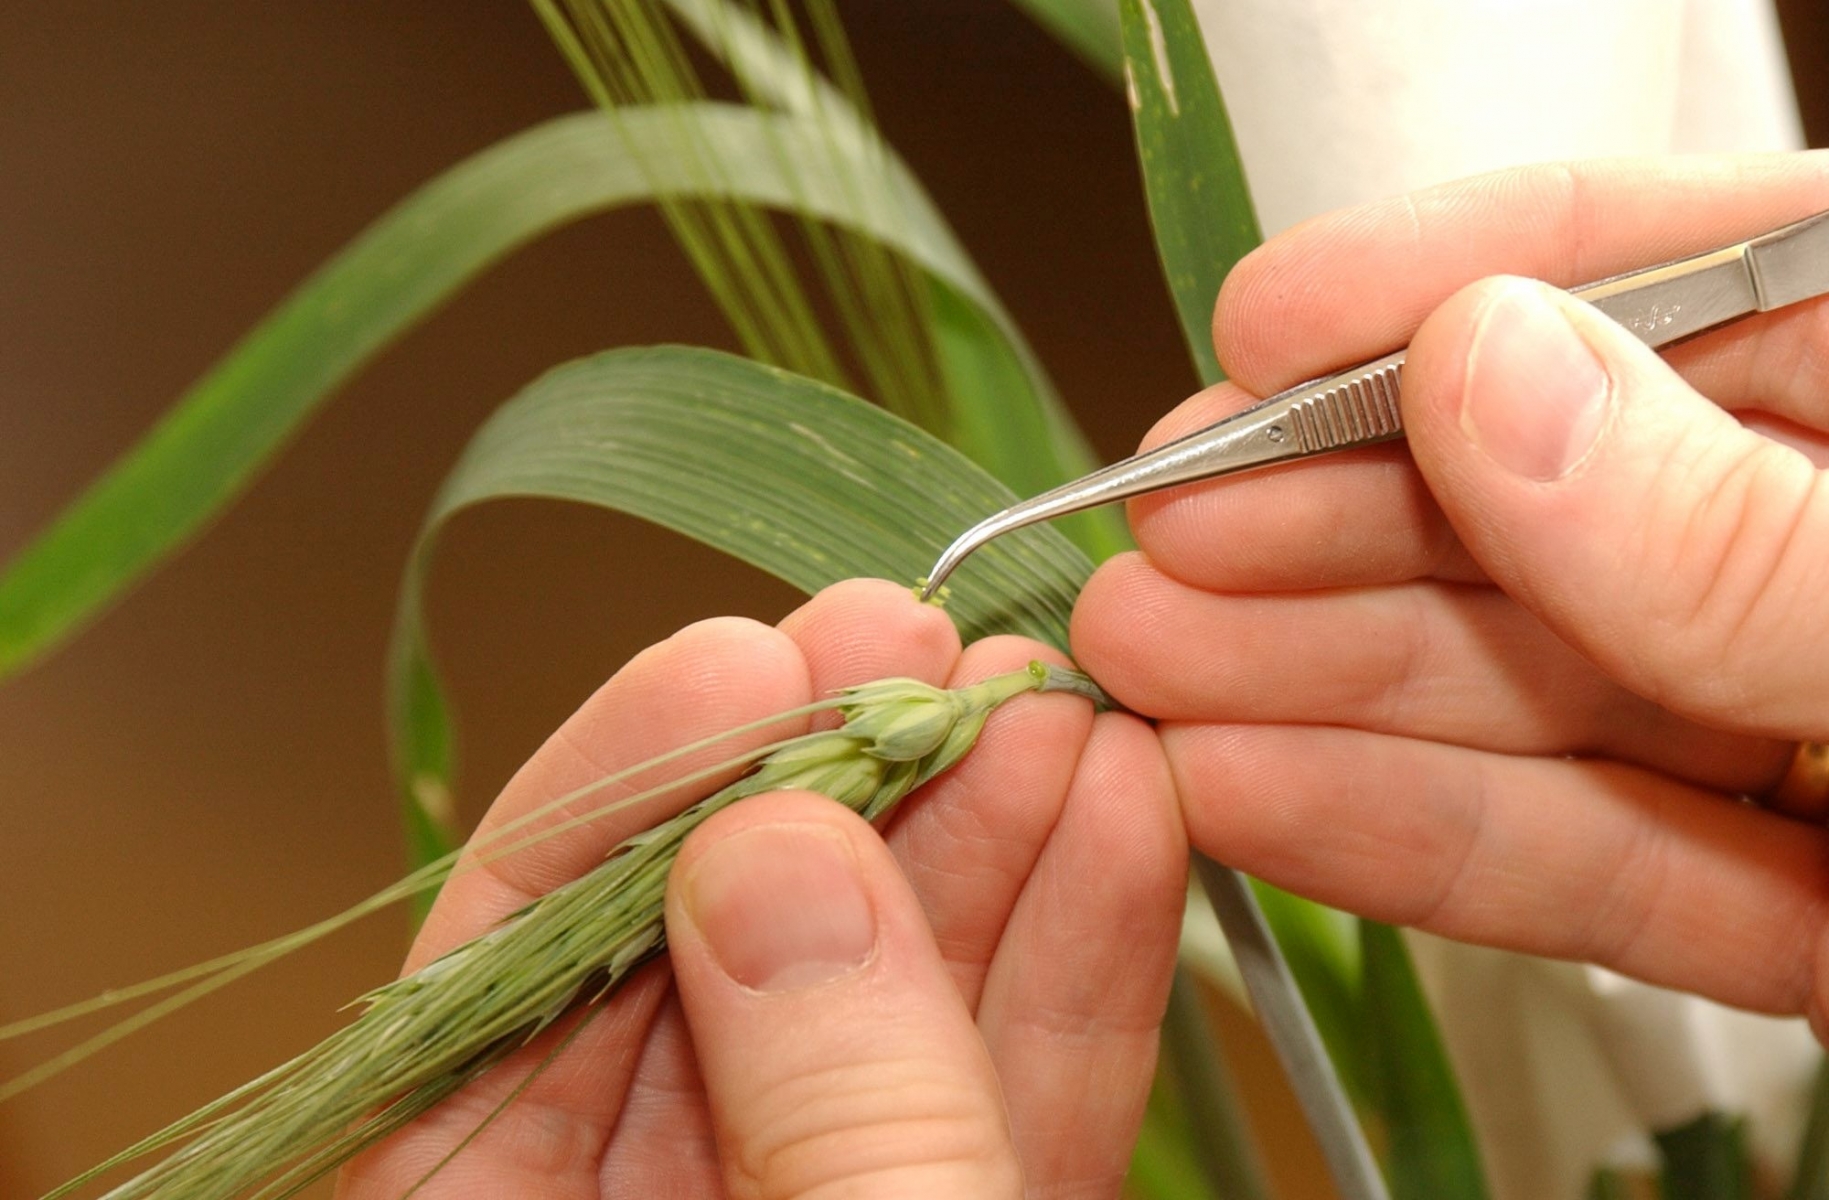 Station fédérale agronomique de Changins agronomie génétique blé agriculture